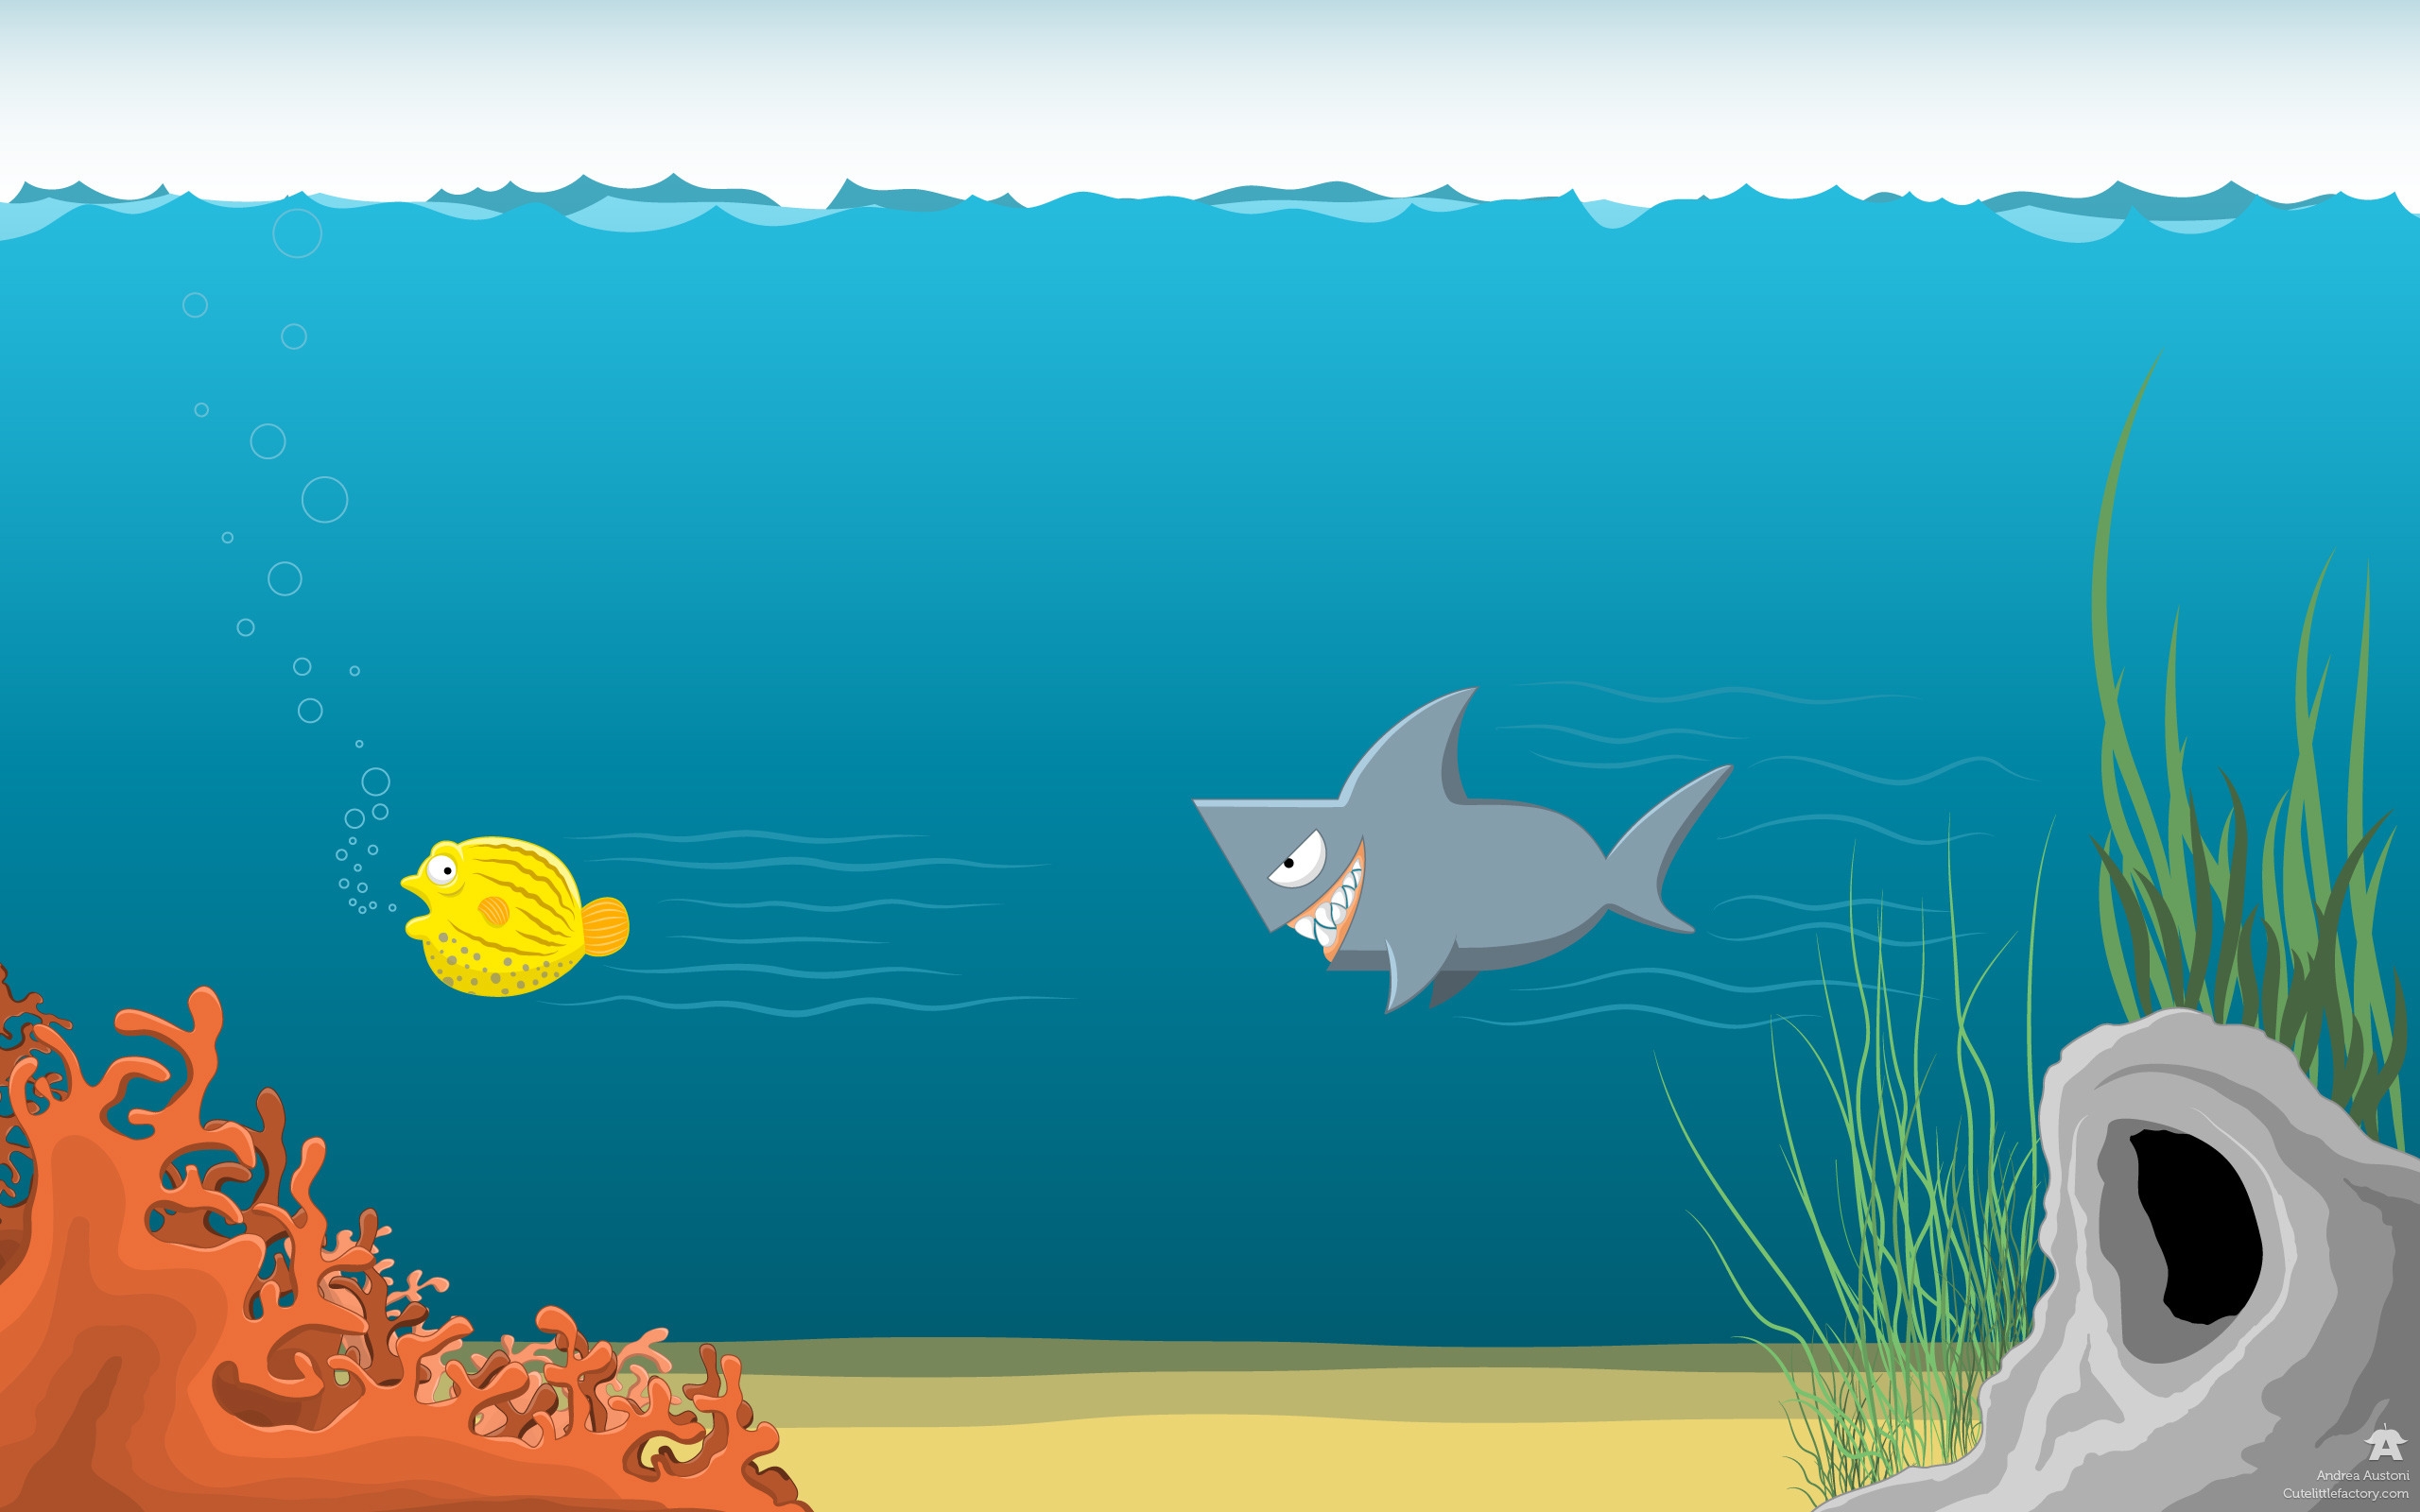 Shark blowfish for 2560 x 1600 widescreen resolution